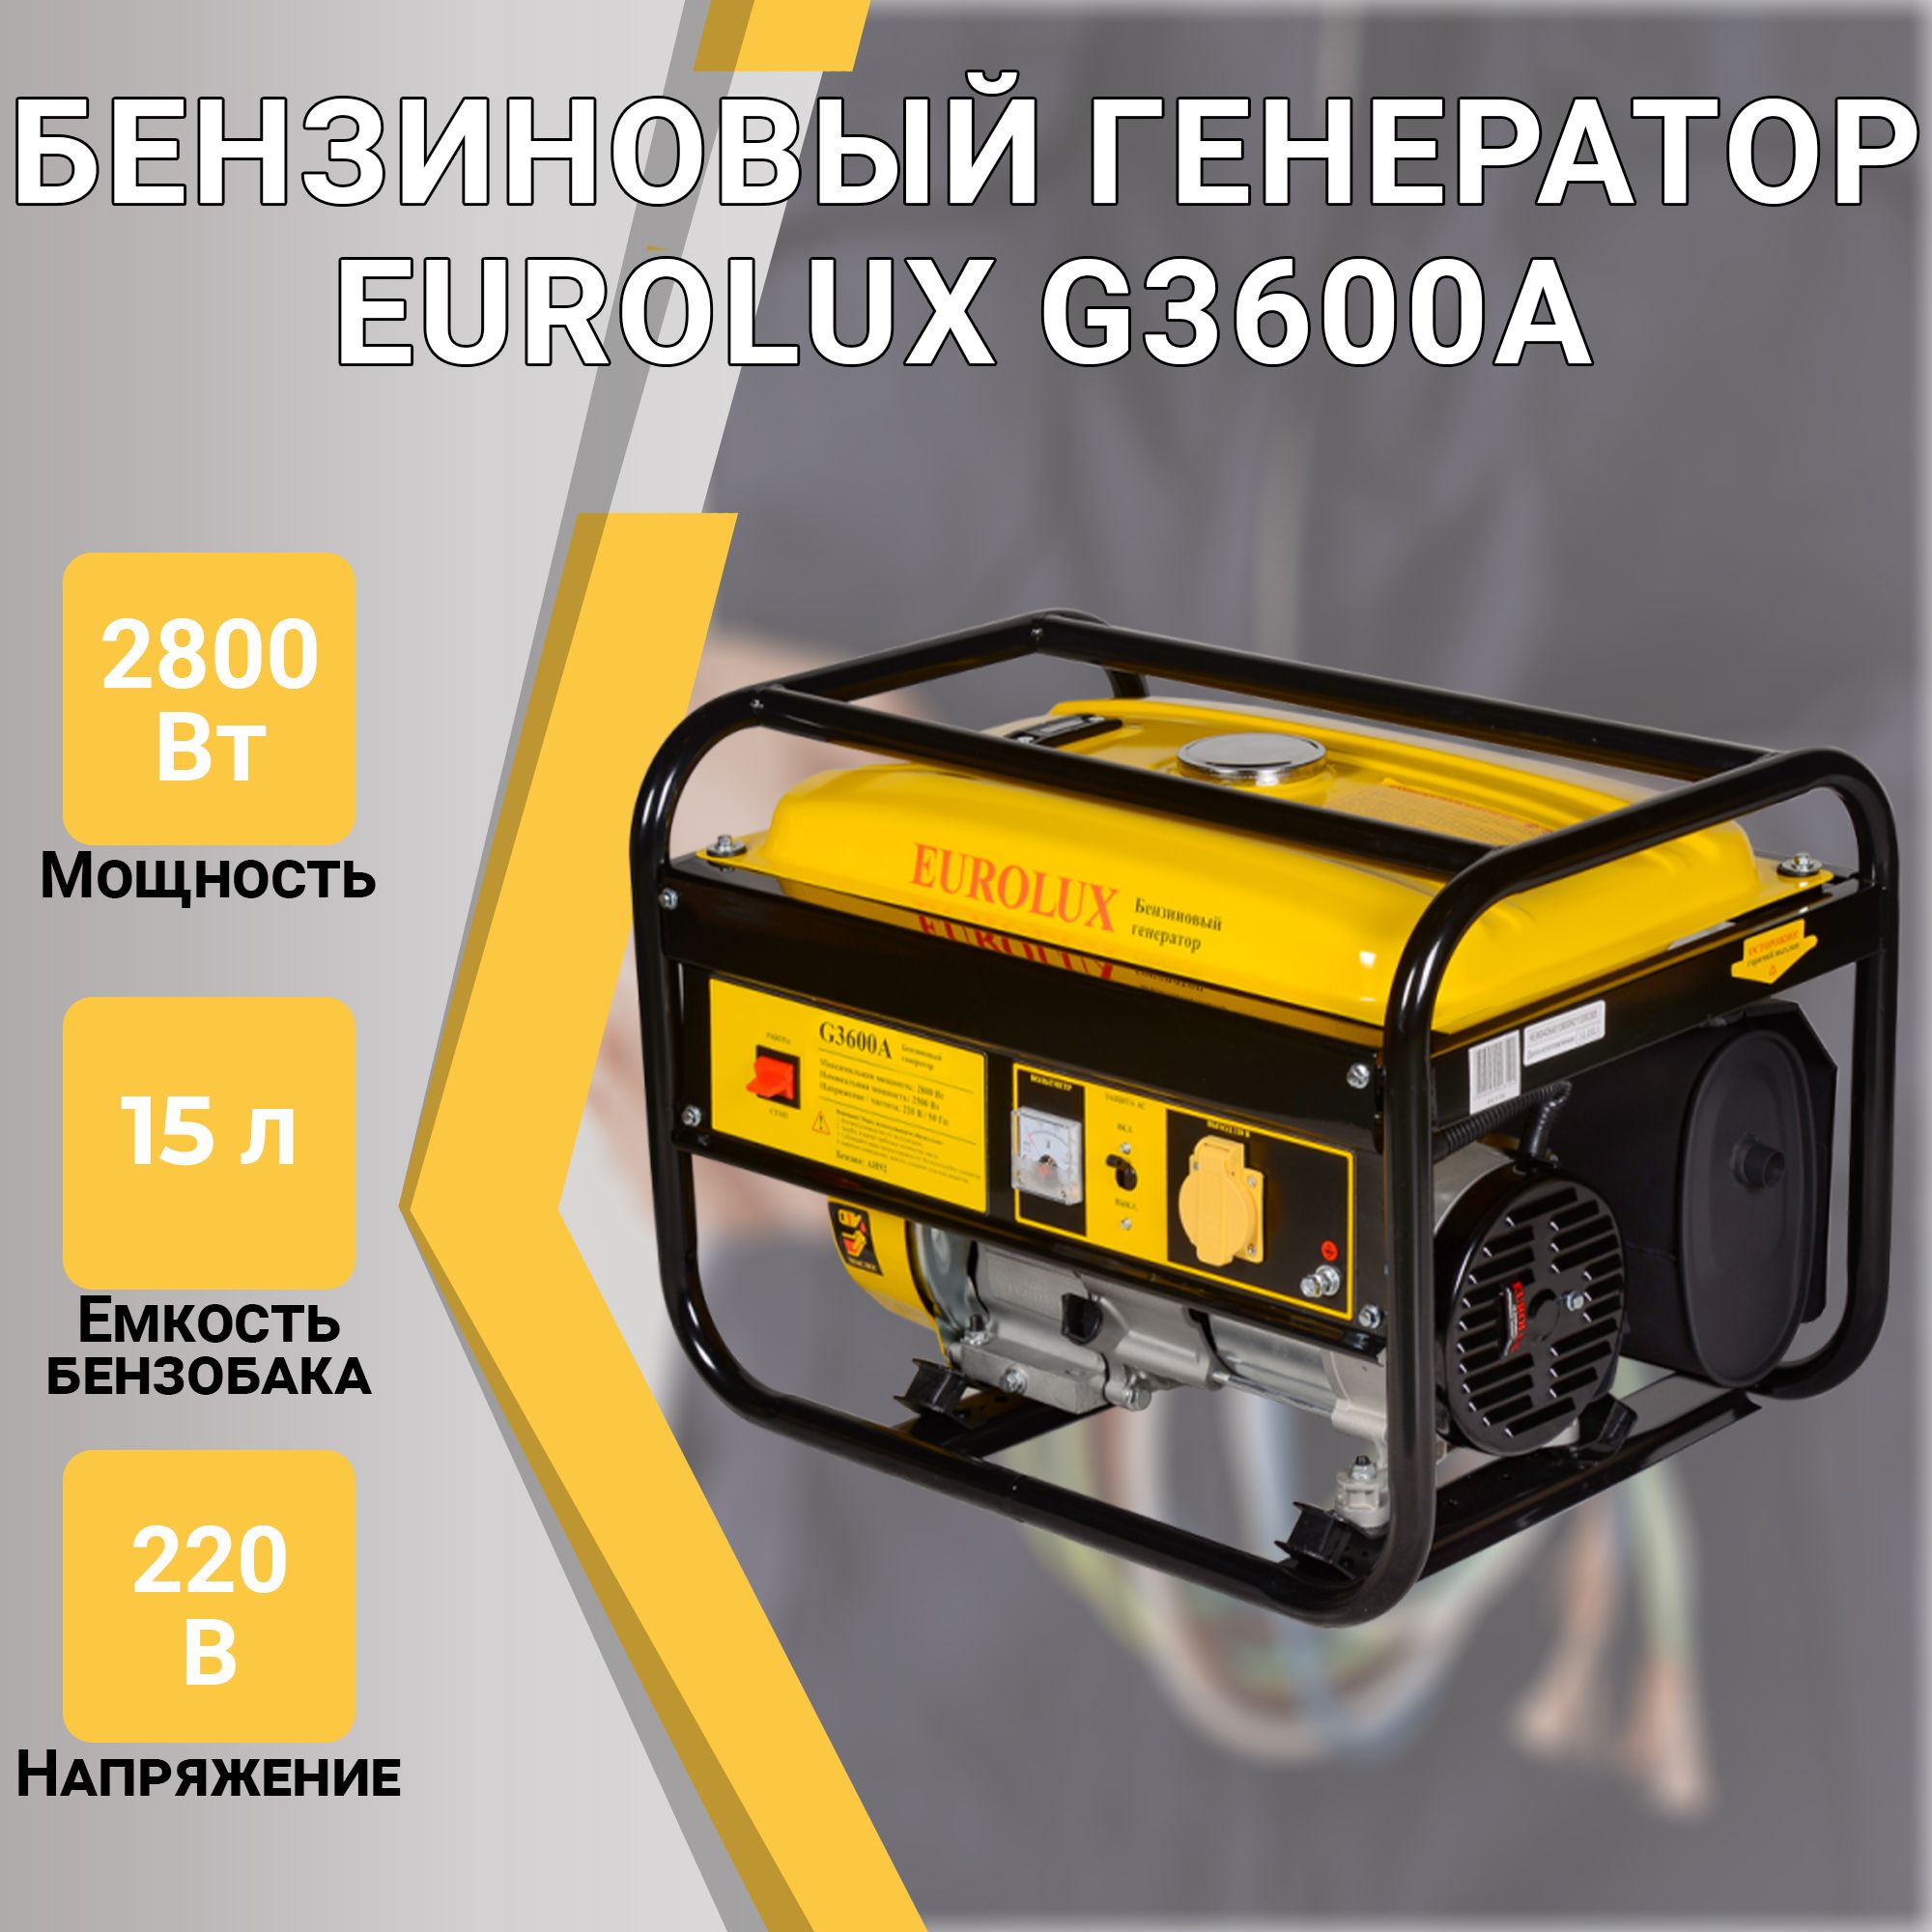 ЭлектрогенераторG3600AEurolux